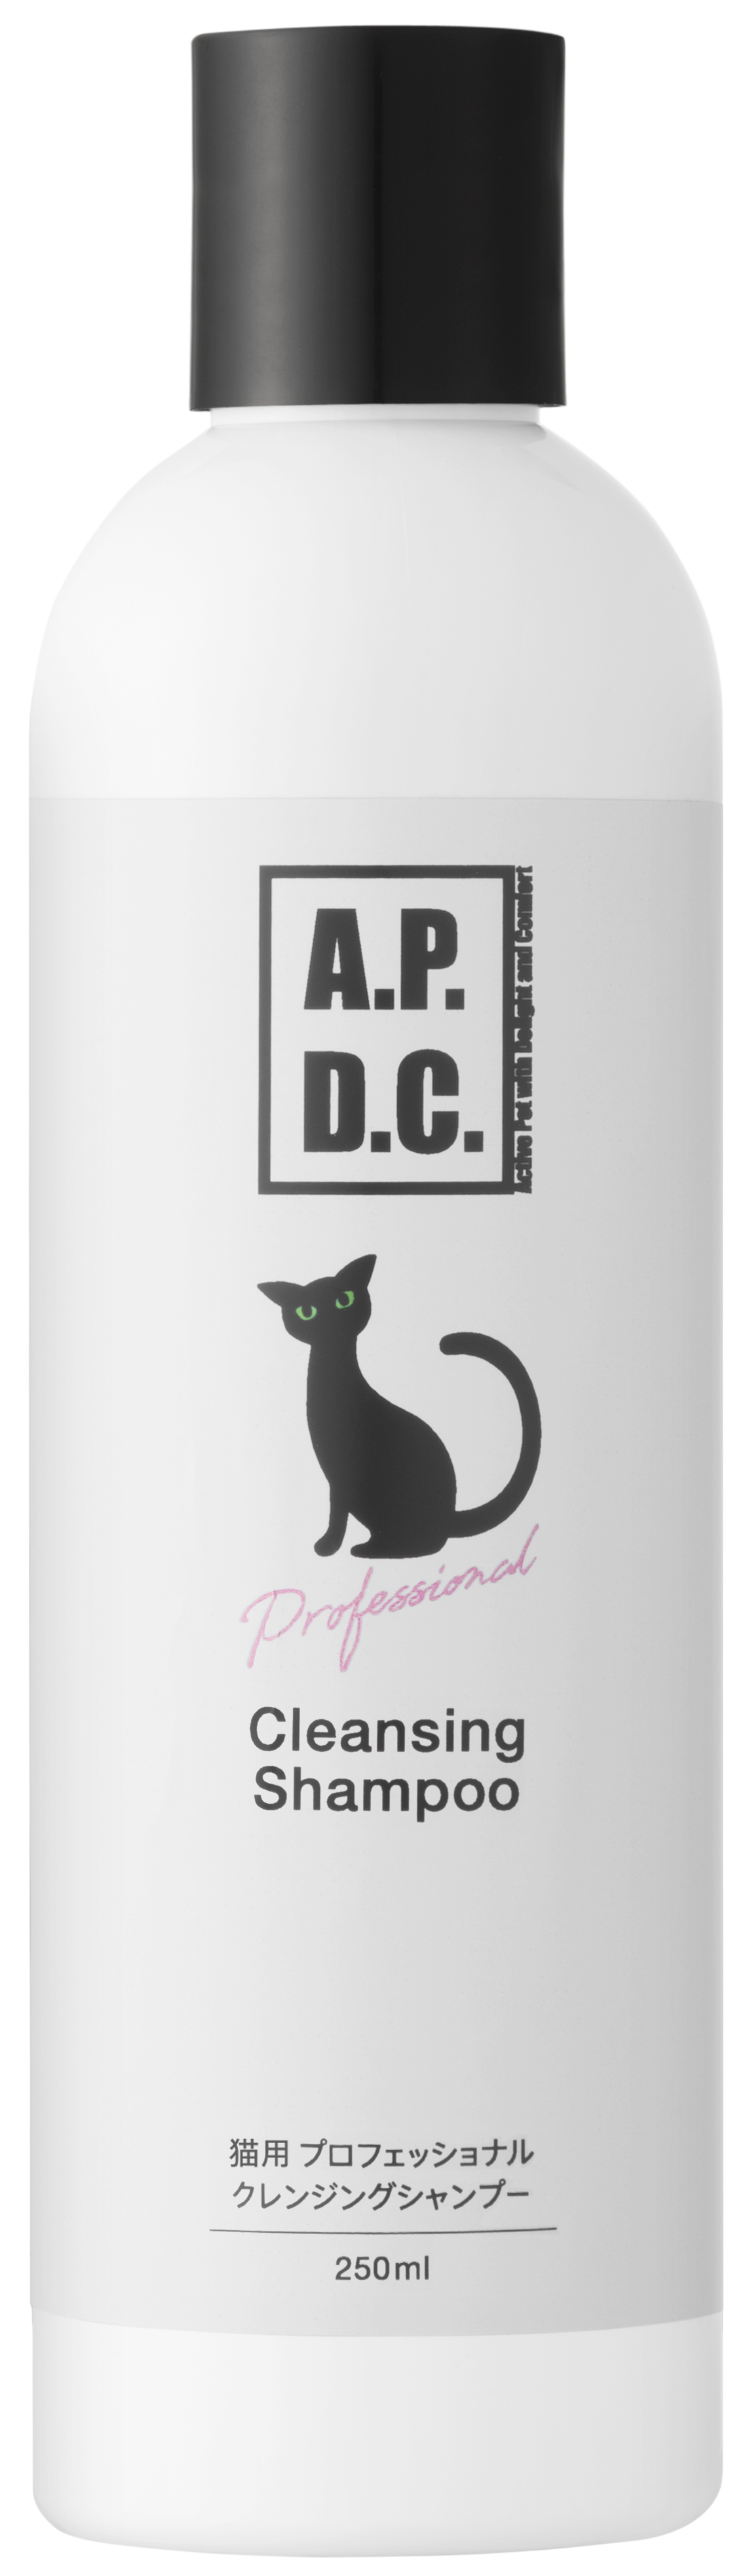 【A.P.D.C.】猫用 プロフェッショナル ケアシャンプー